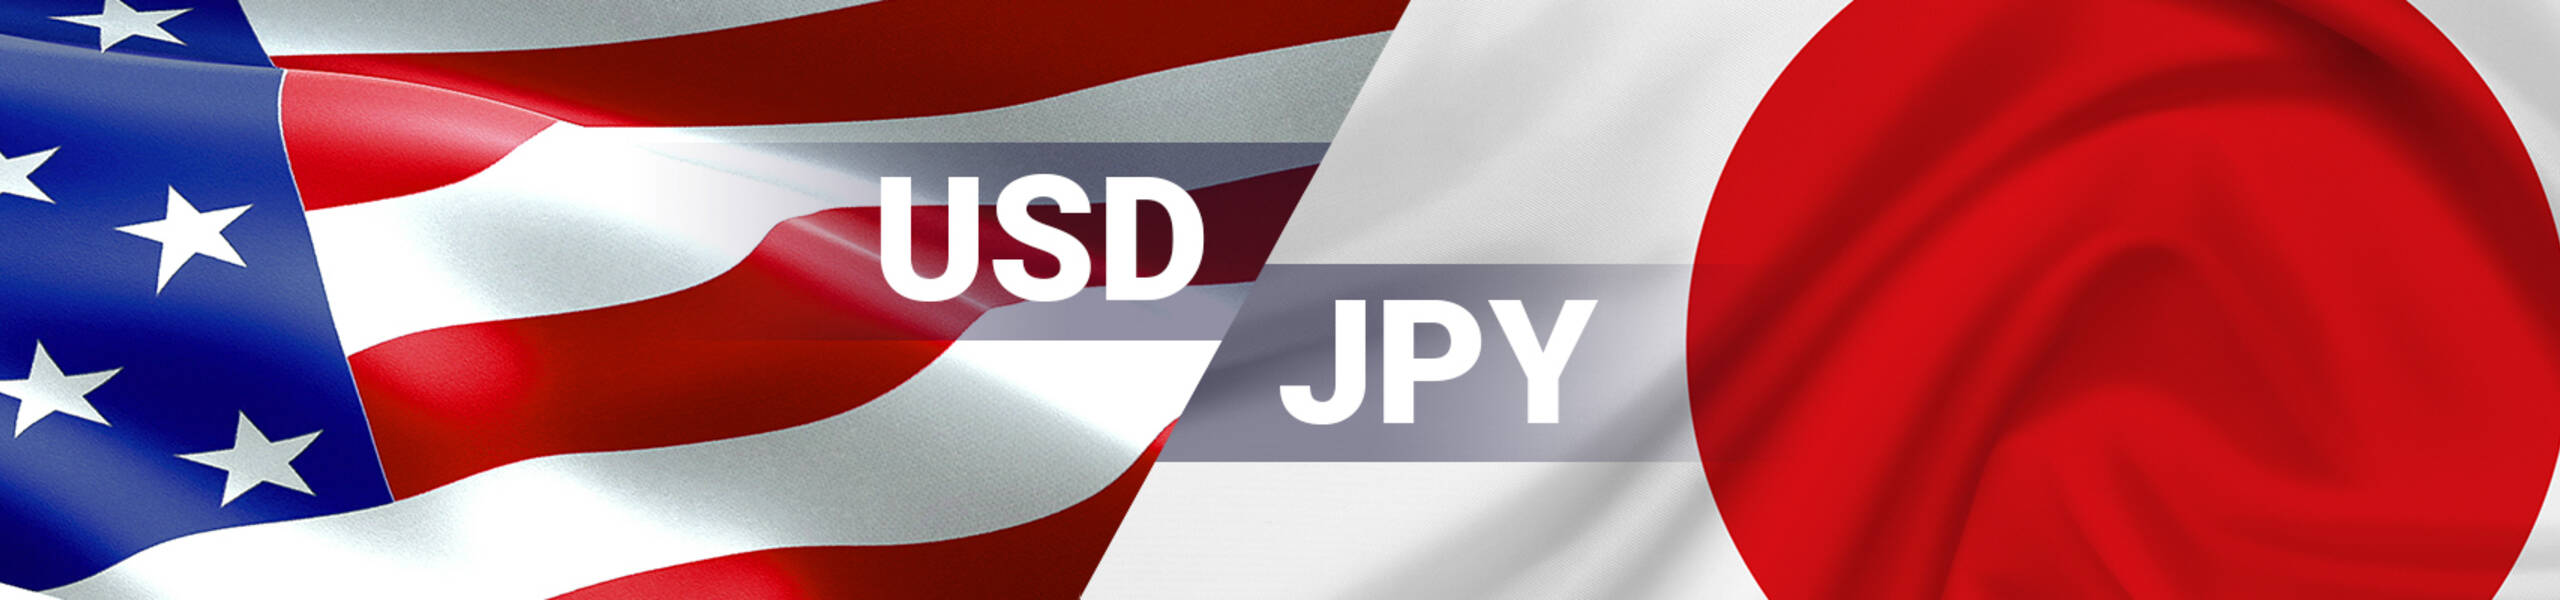 USD/JPY: อาจจะมีการร่วงต่อระยะสั้น